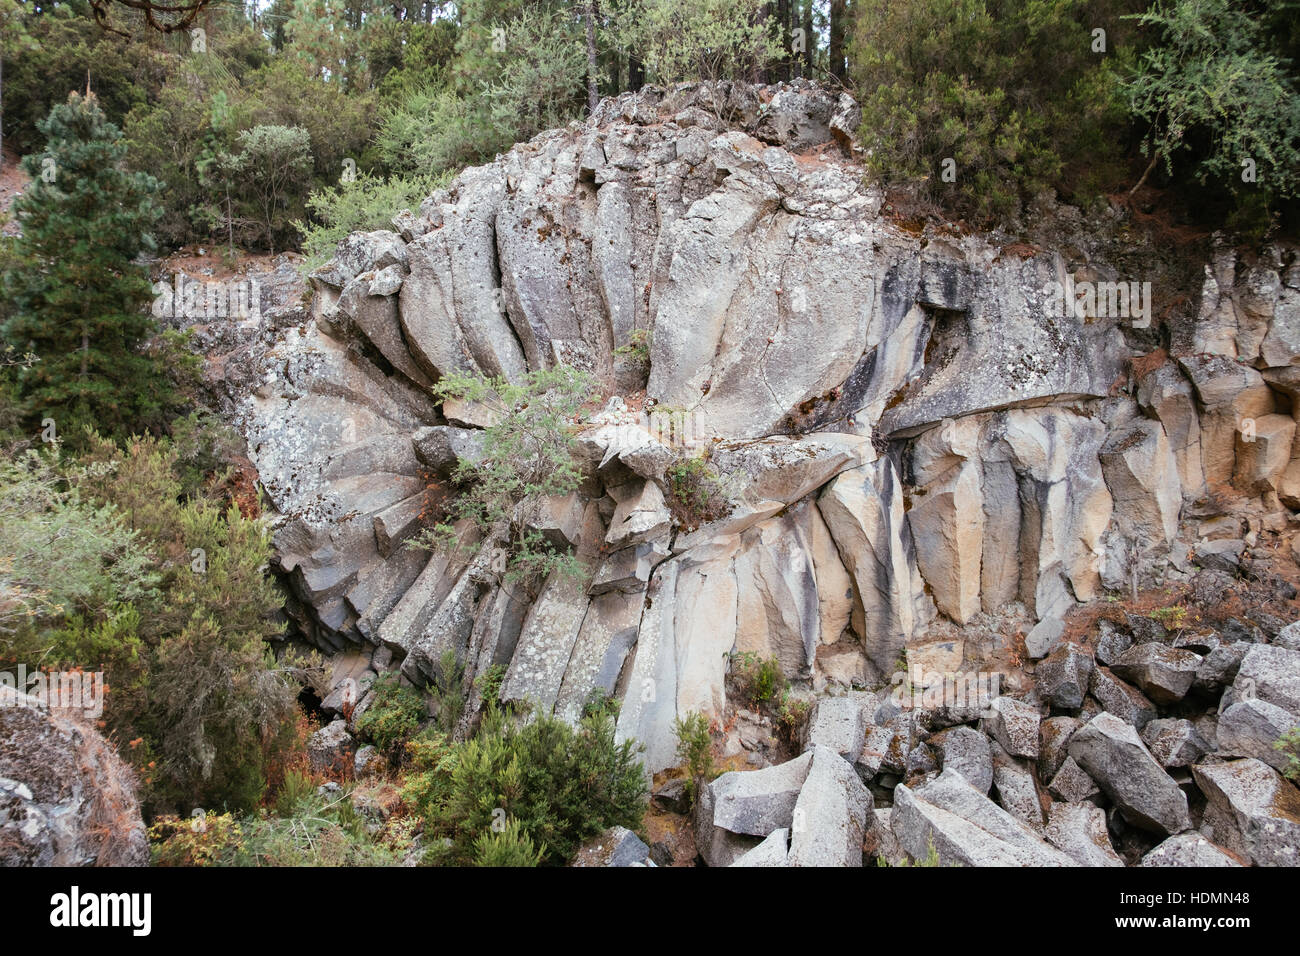 Geological formation at Parque Natural, Corona Forestal , Mirador de la Piedra de la Rosa, Tenerife, Canary Islands, Spain Stock Photo